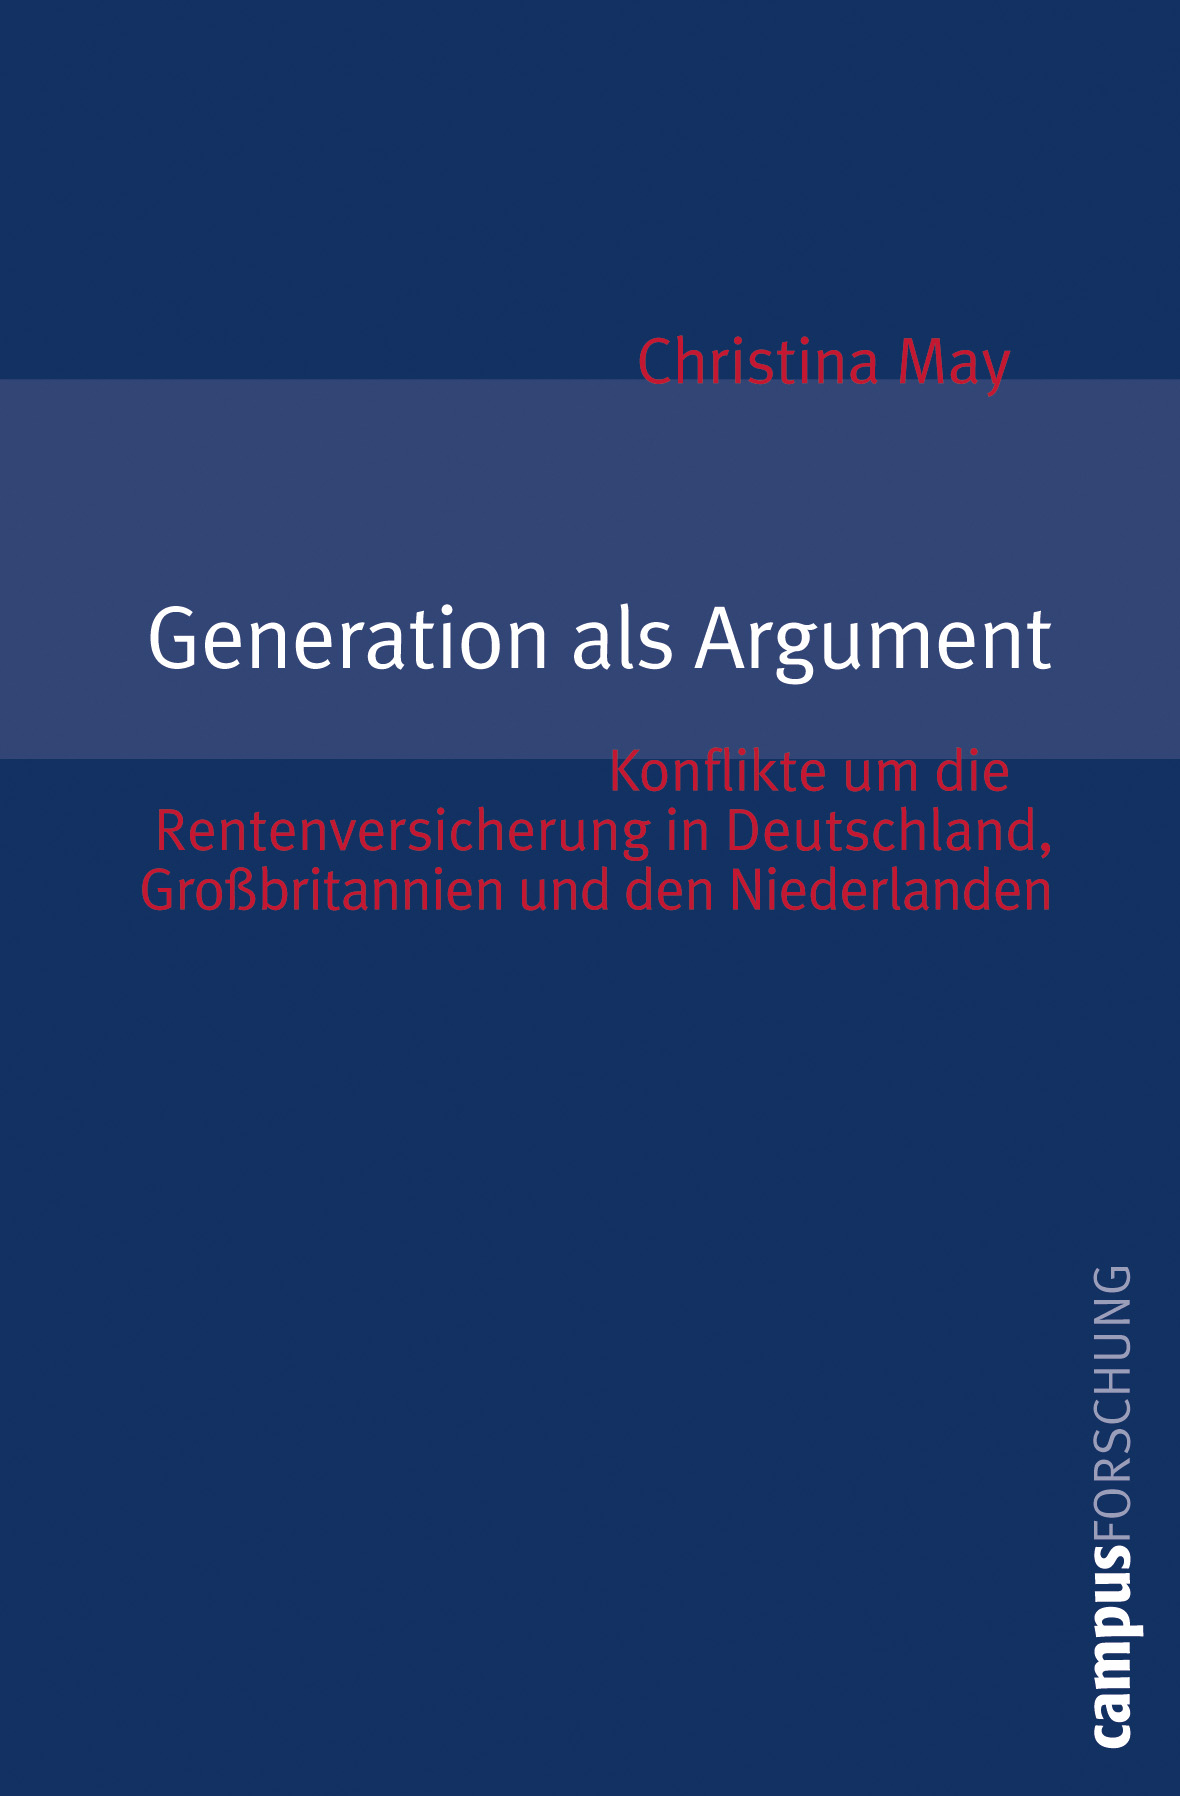 Historische Beiträge zur Generationenforschung Cover